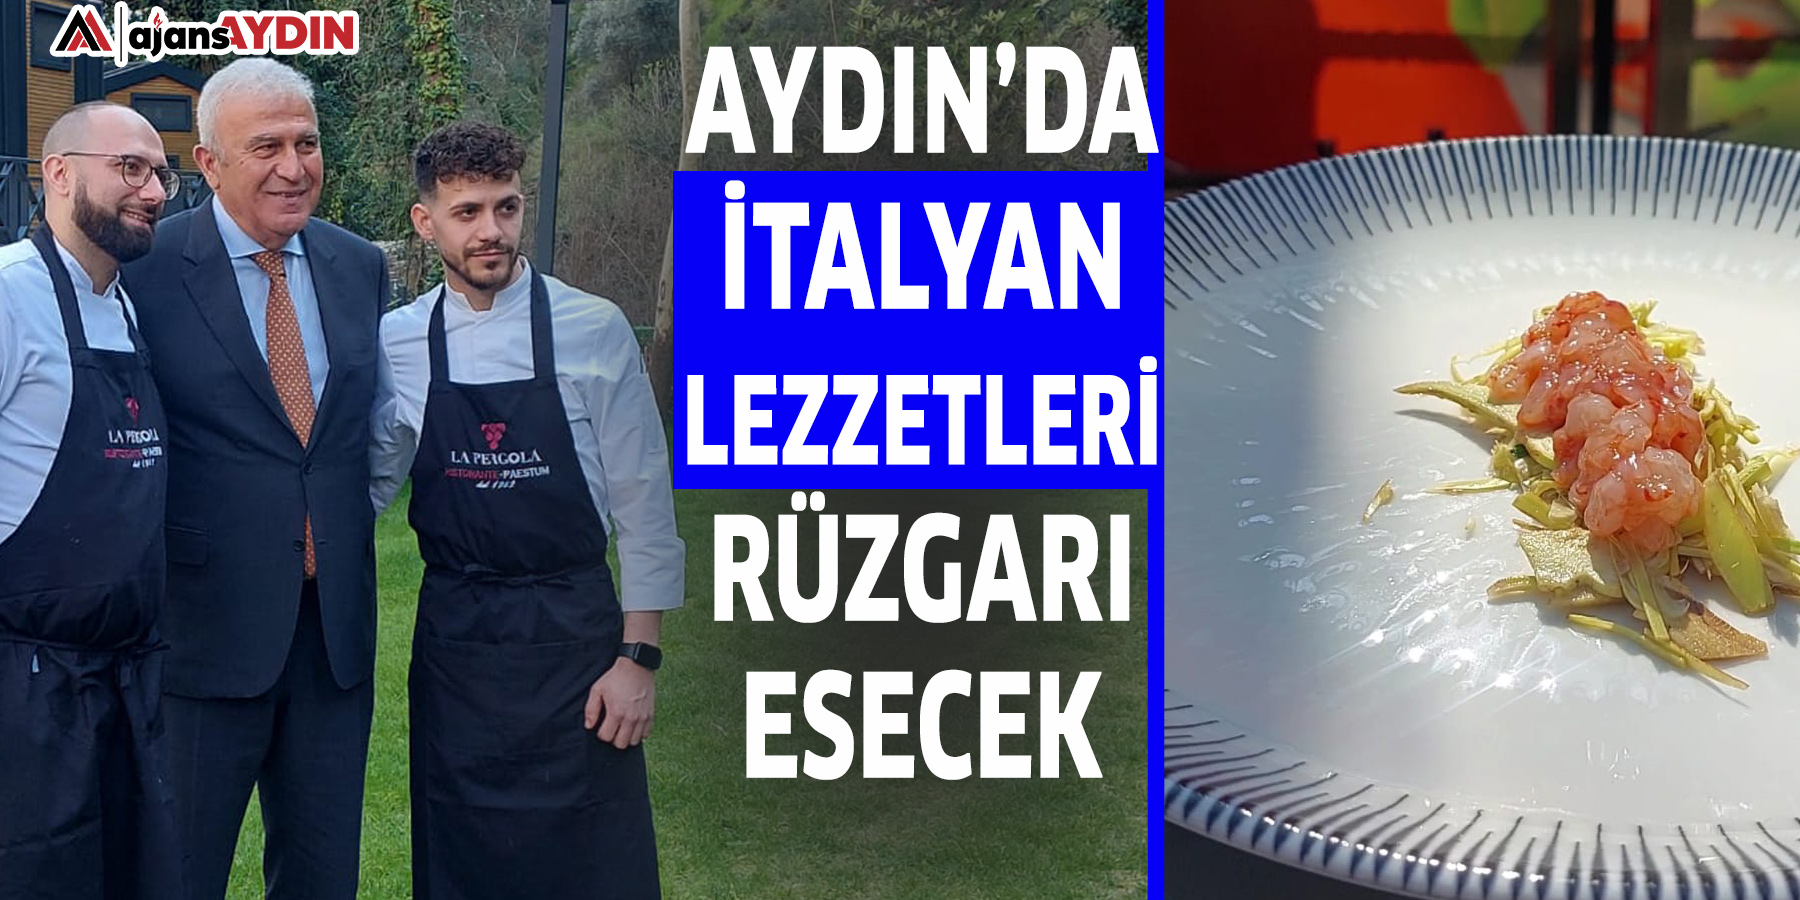 Aydın’da İtalyan lezzetleri rüzgarı esecek